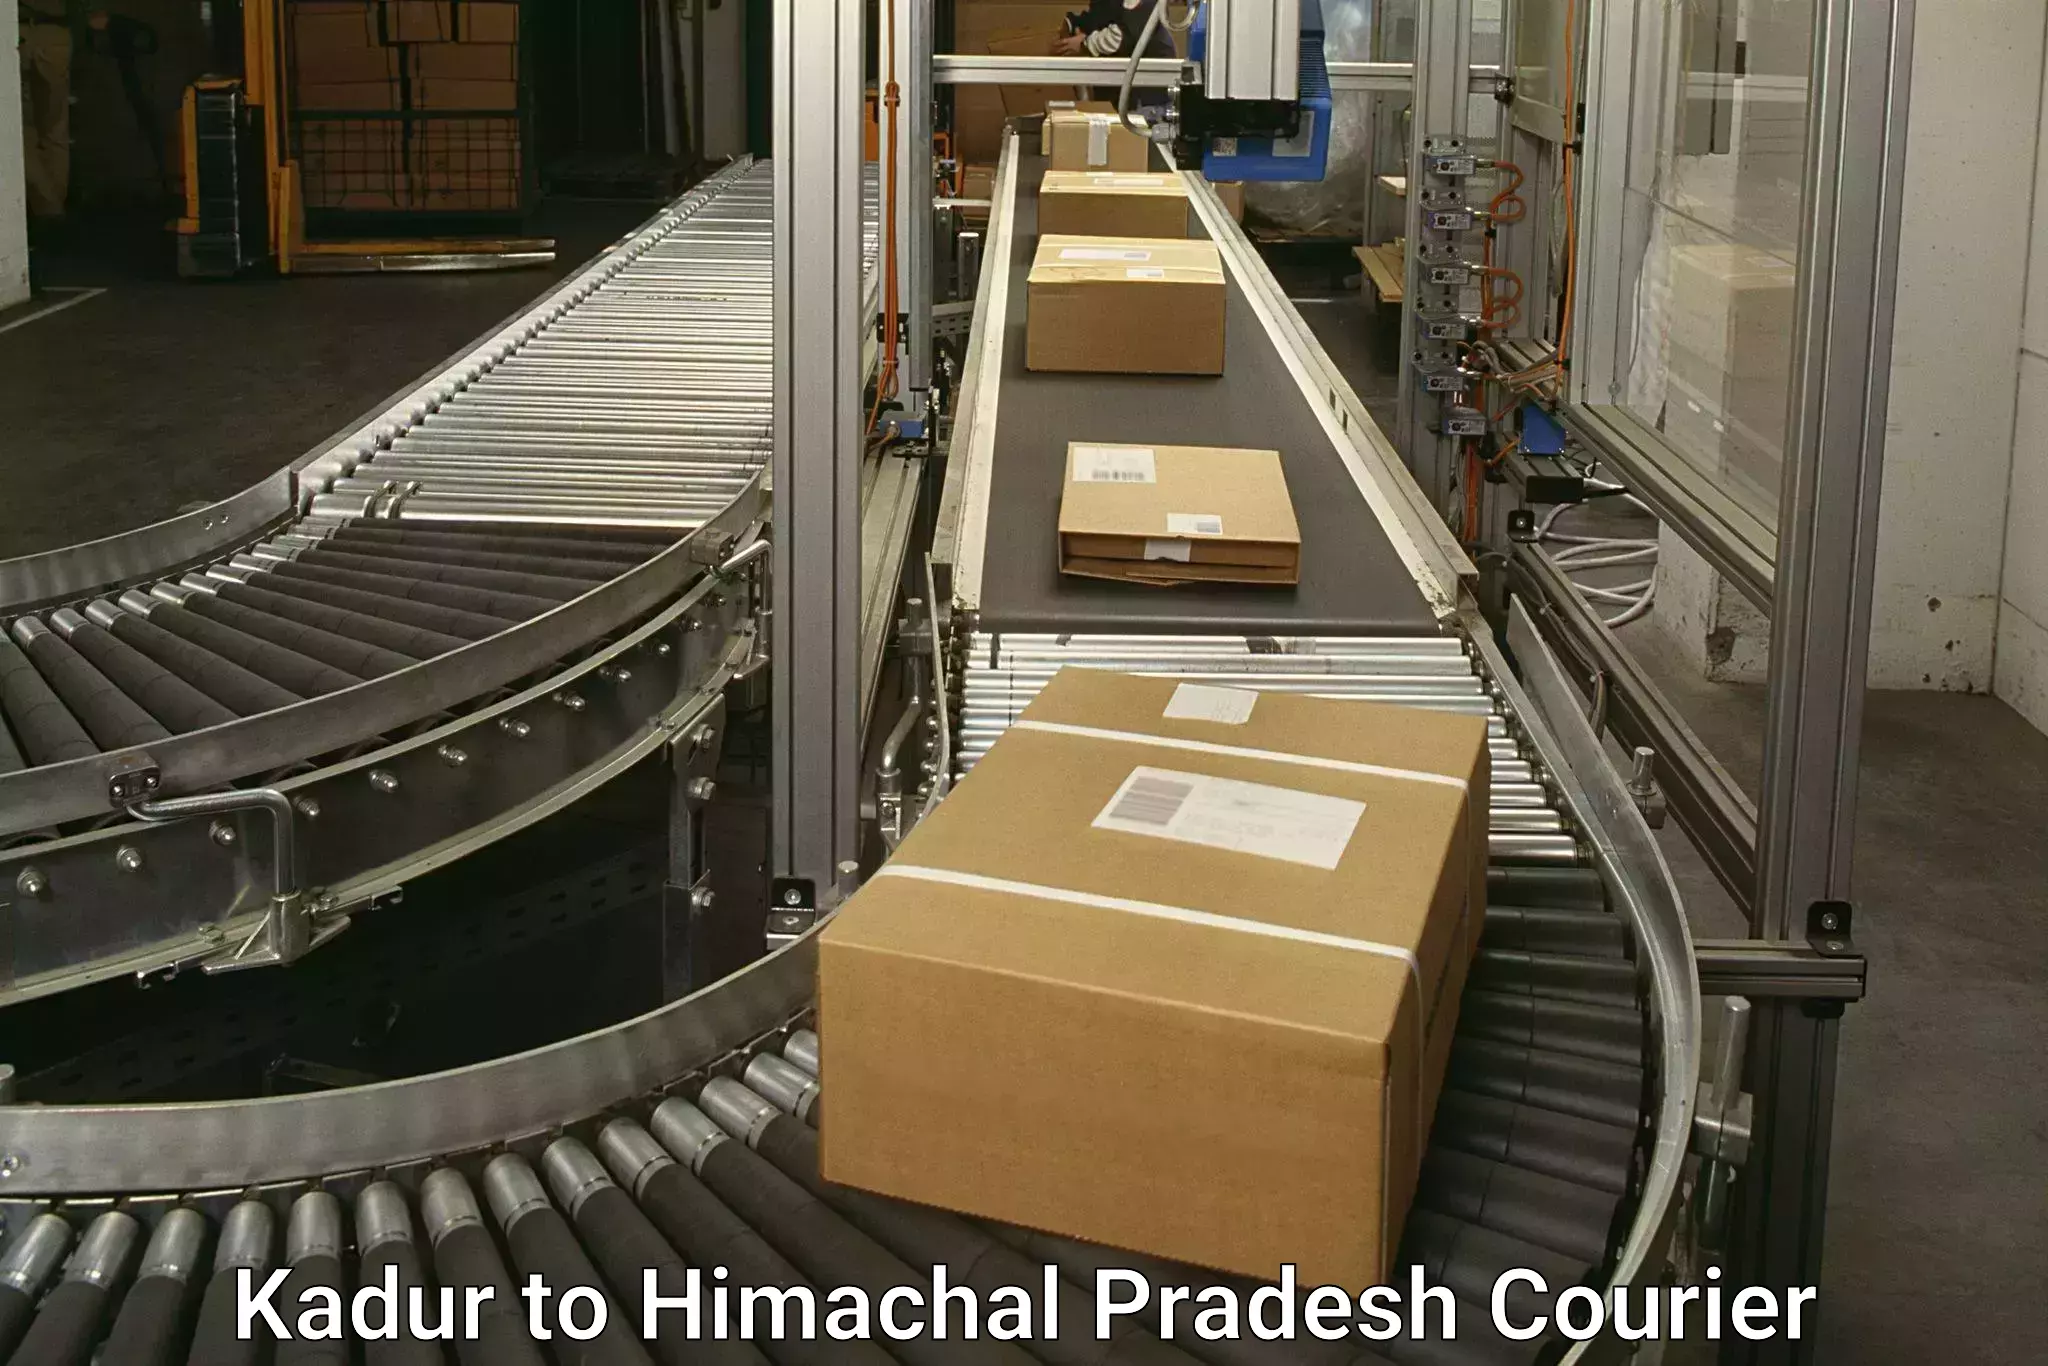 Customer-focused courier Kadur to Himachal Pradesh